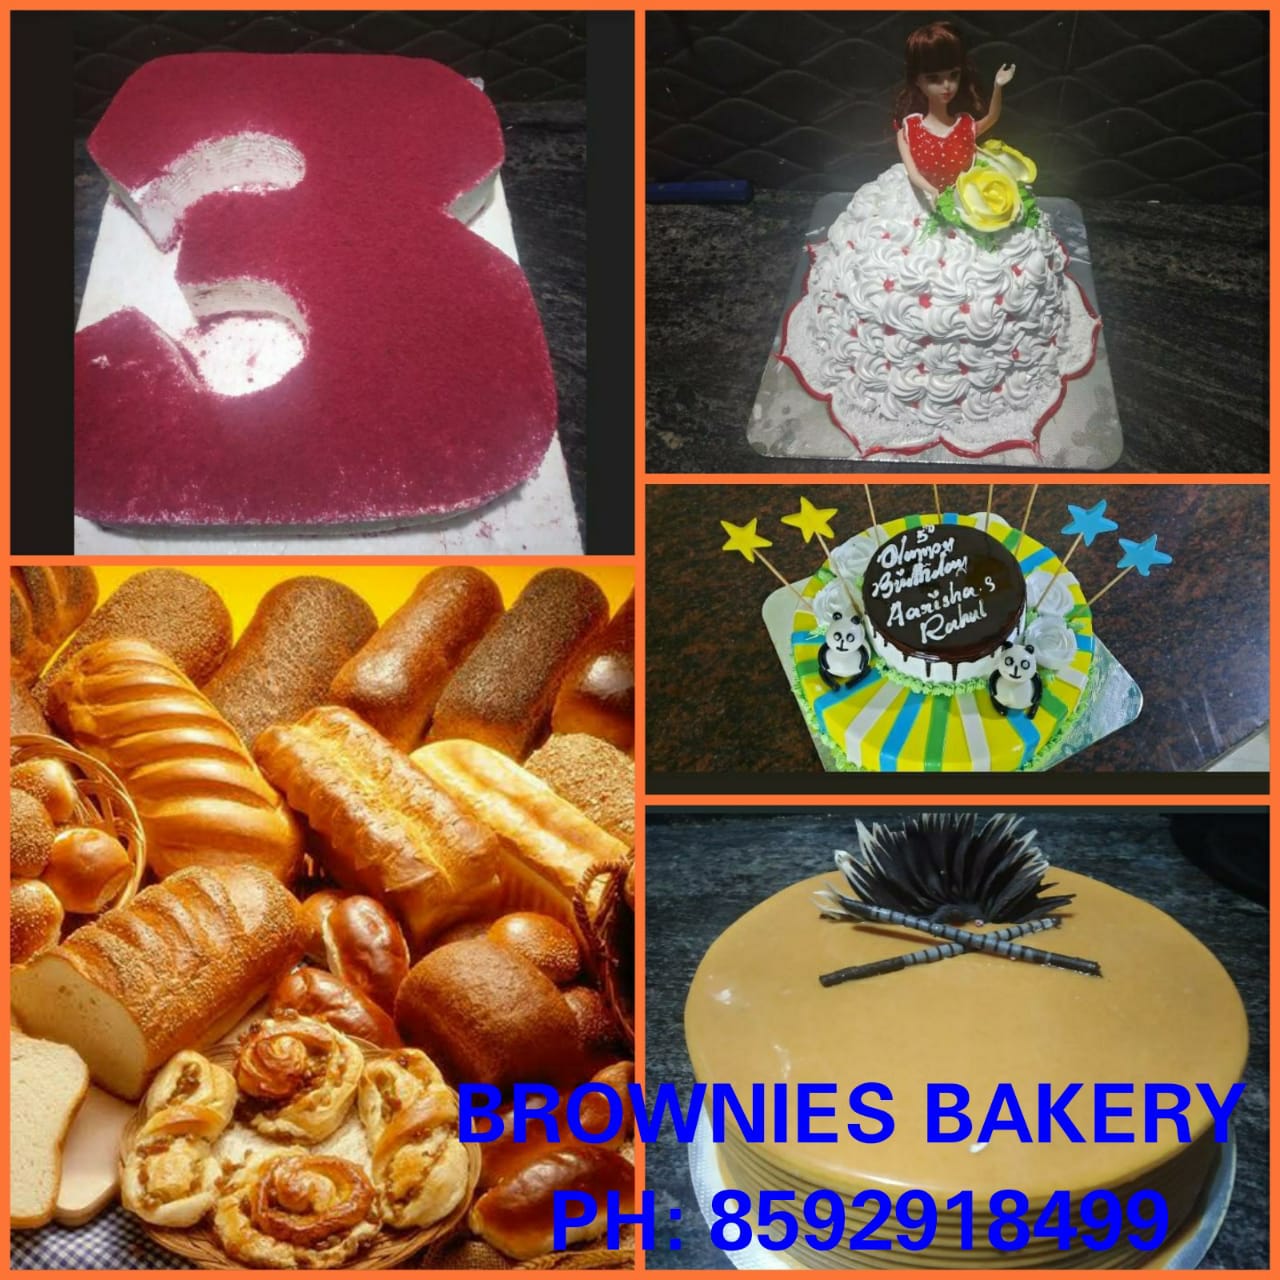 Brownies Bakery - Best Bakery...